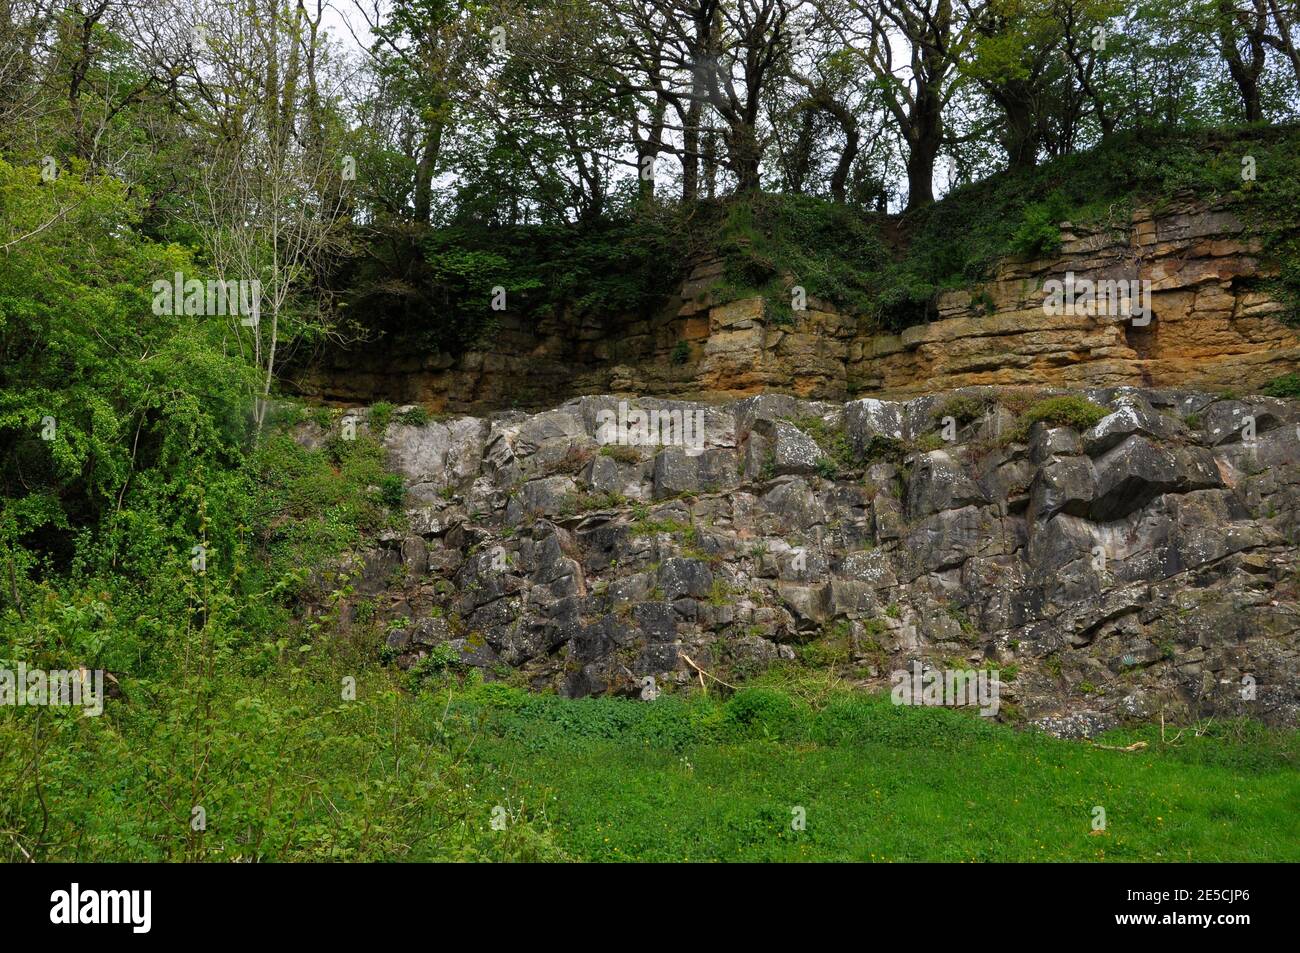 El de la Beche inconformidad en Vallis Vale, Somerset, mostrando capas horizontales de roca sedimentaria amarilla - caliza oolítica - descansando sobre ti Foto de stock